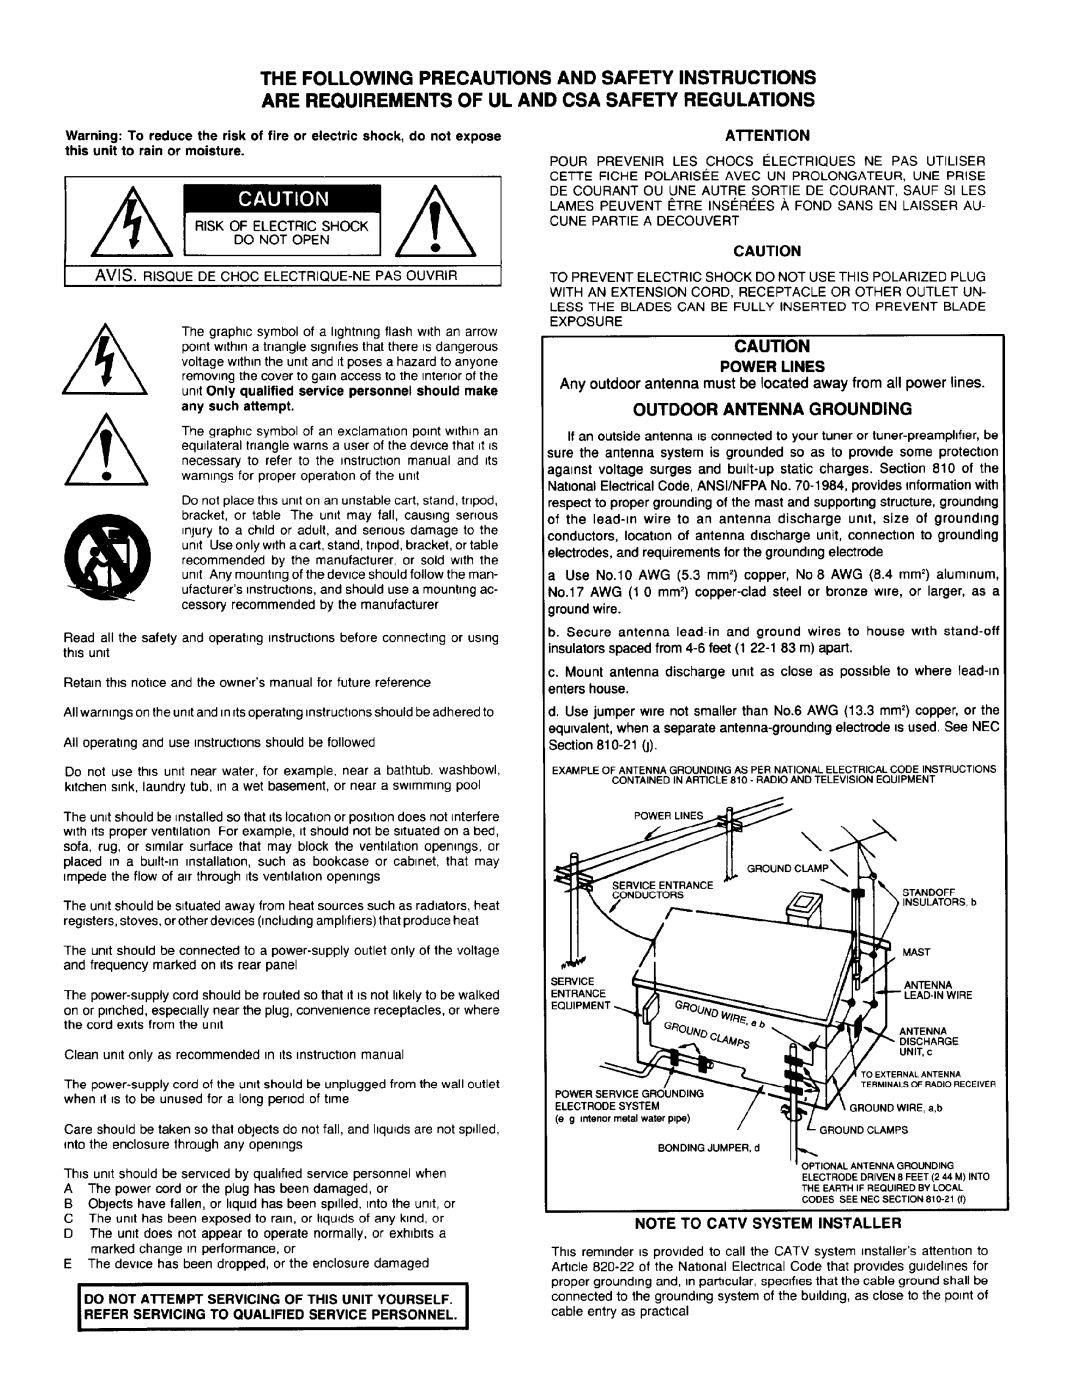 Adcom GFA-7300, GFA-7400 manual 